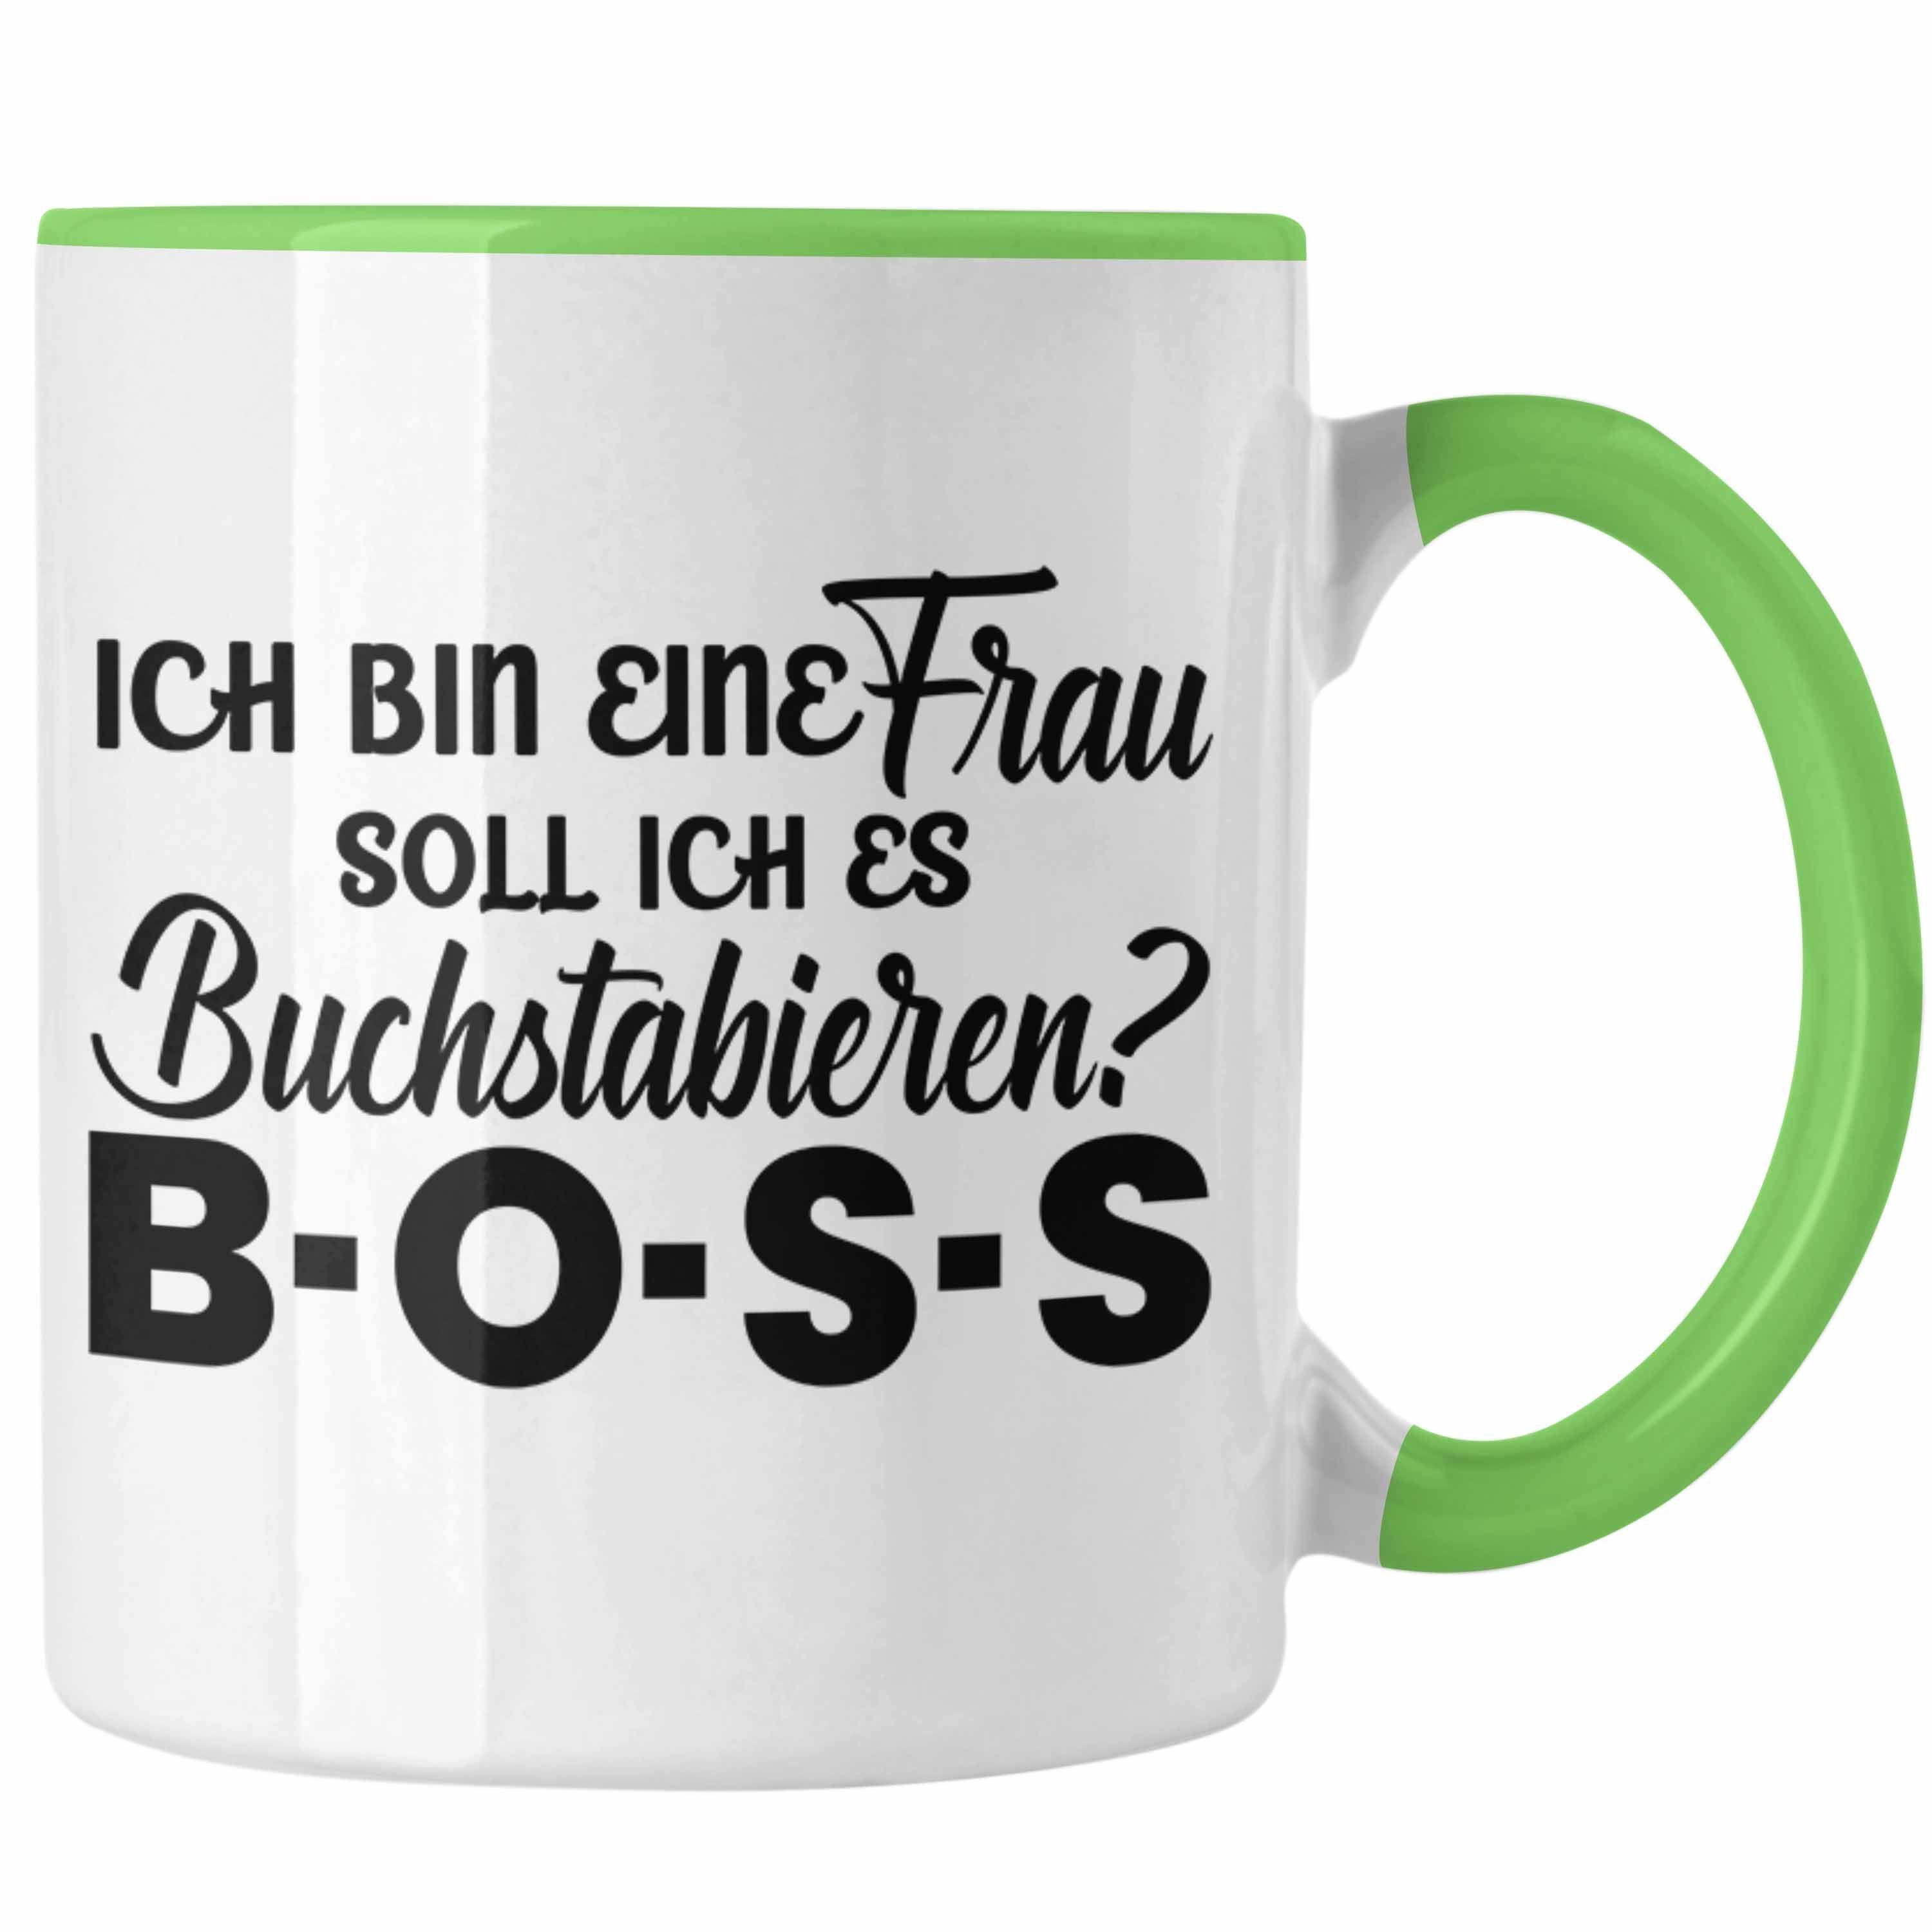 Trendation Tasse Trendation - Frauen Tasse Geschenk Boss Tasse mit Spruch für Frauen Frauentag Starke Frau Grün